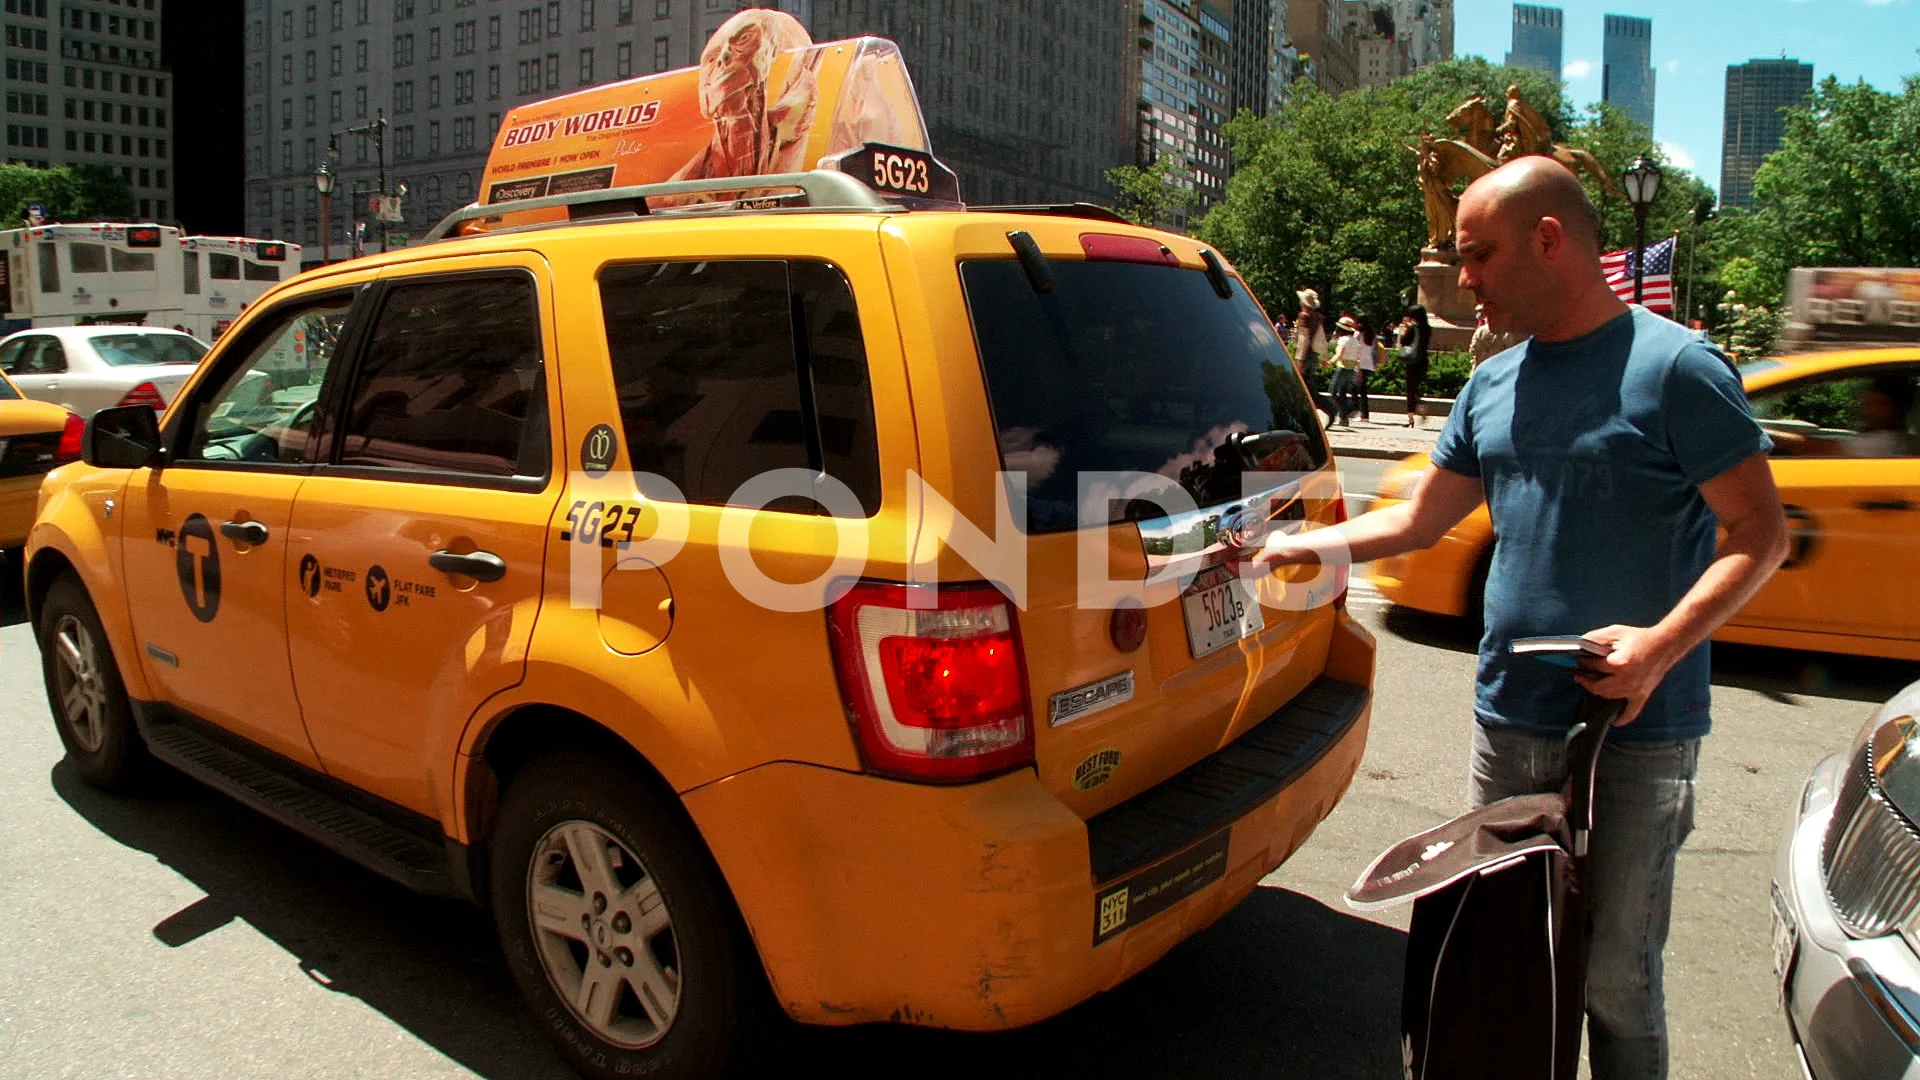 S'pore taxi driver returns passenger's Hermes shopping bag